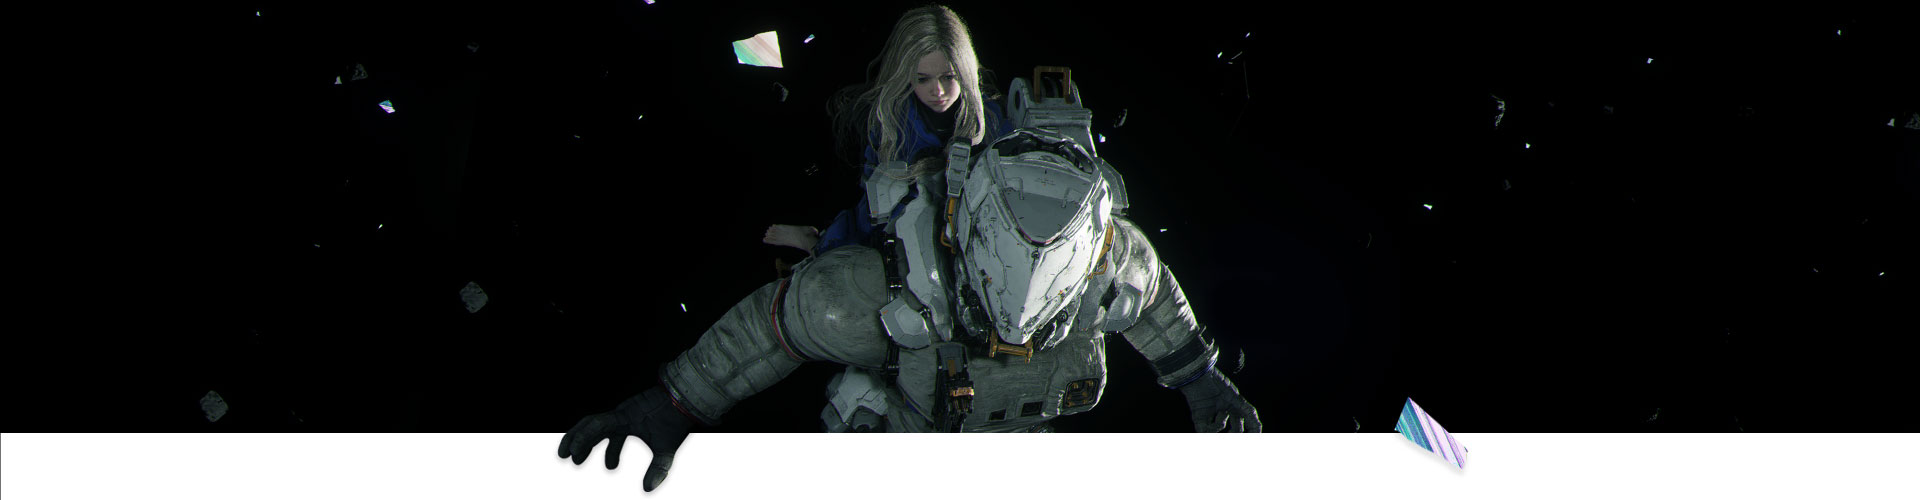 Egy lány egy űrhajóson lovagol az űrben